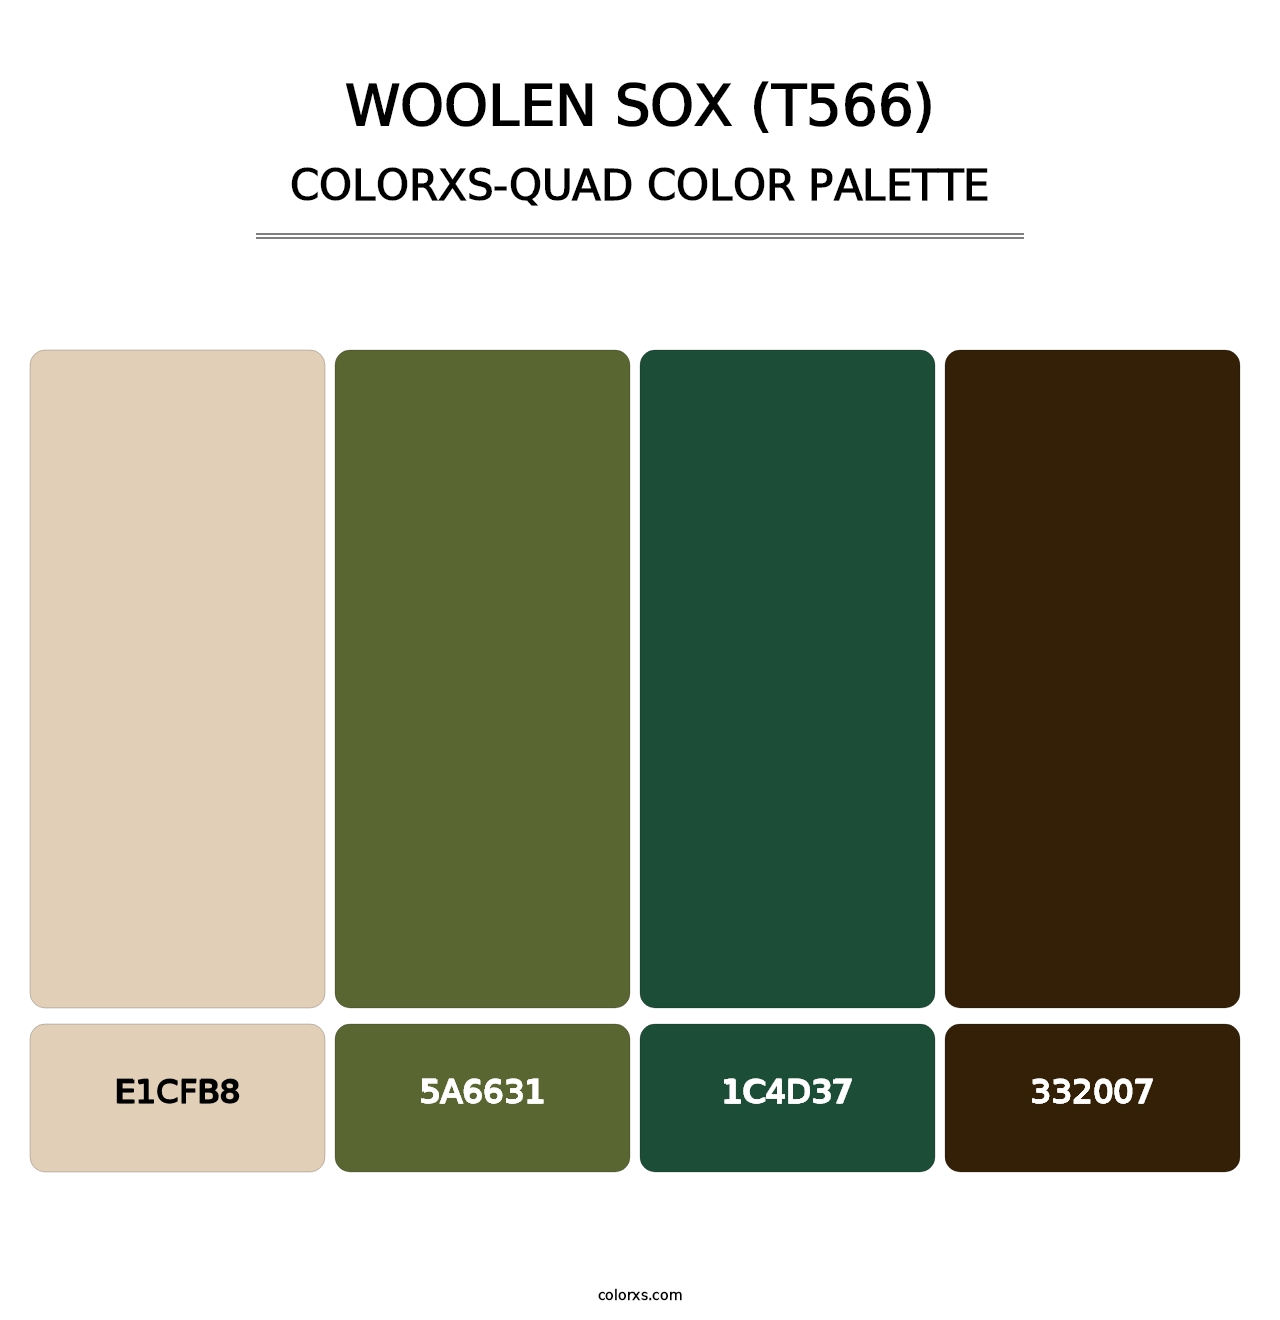 Woolen Sox (T566) - Colorxs Quad Palette